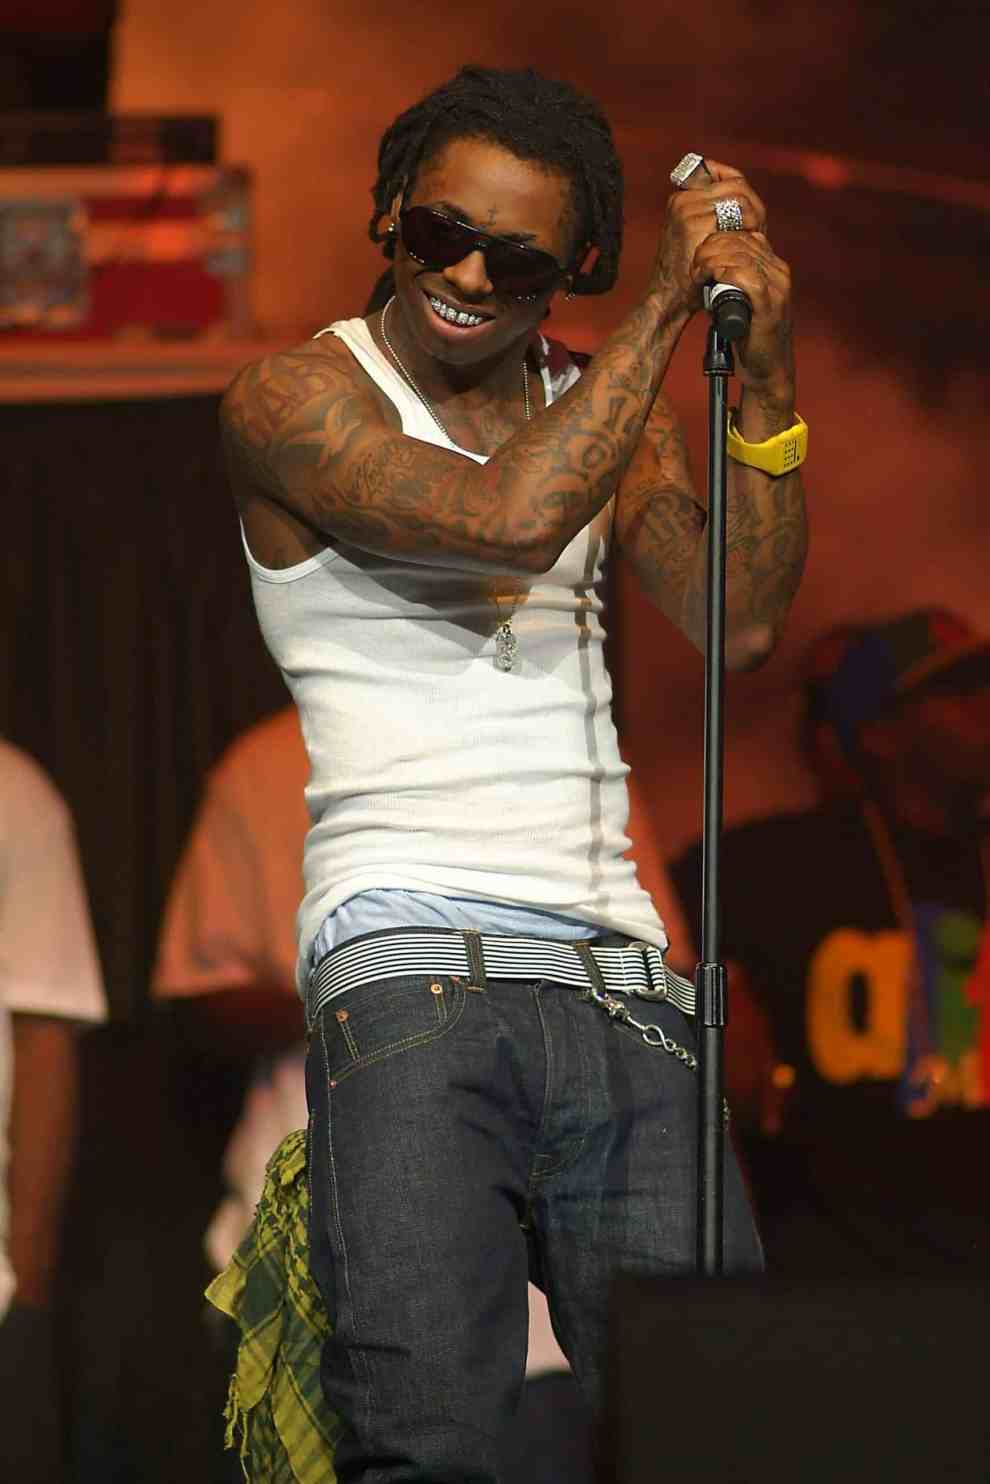 Lil' Wayne performing on stage